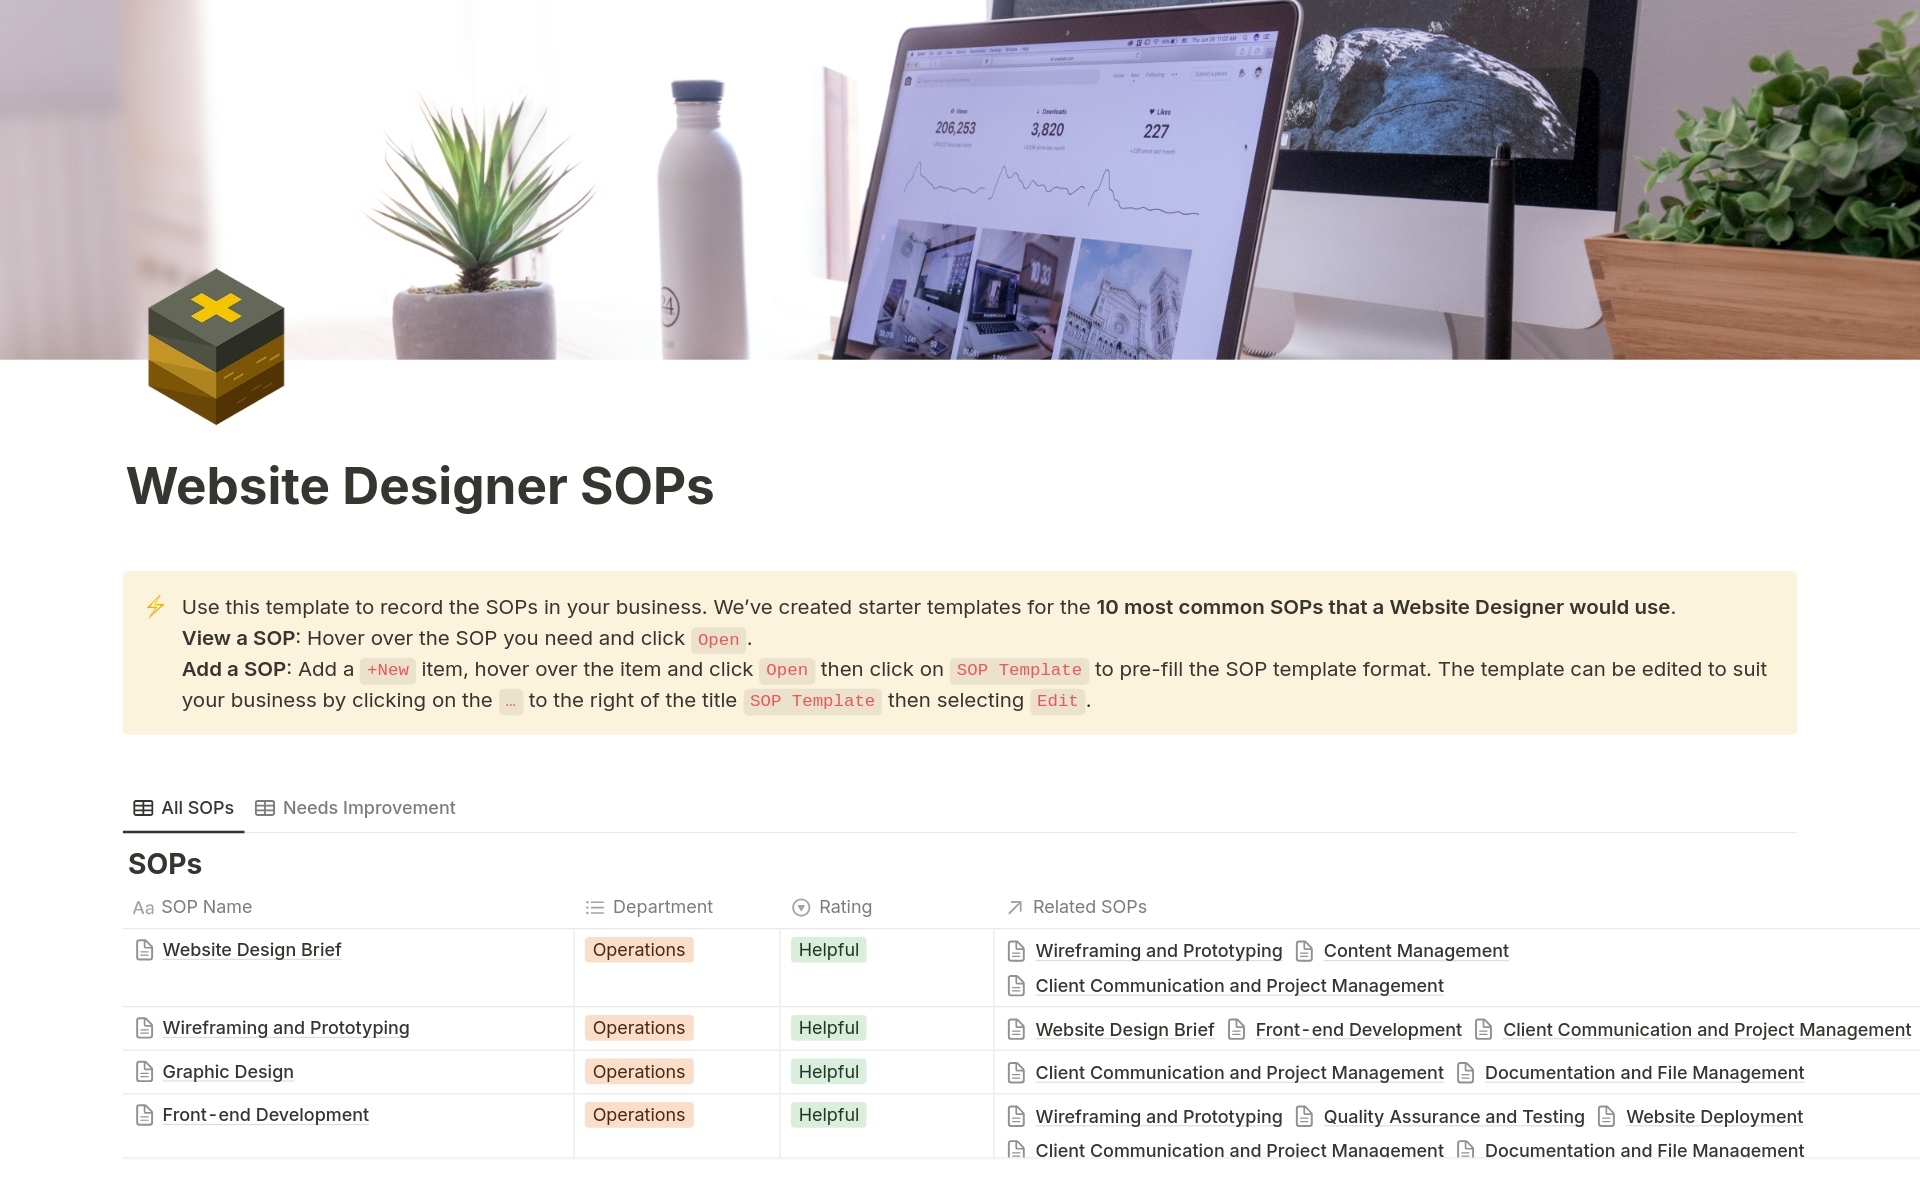 Vista previa de una plantilla para Website Designer SOPs